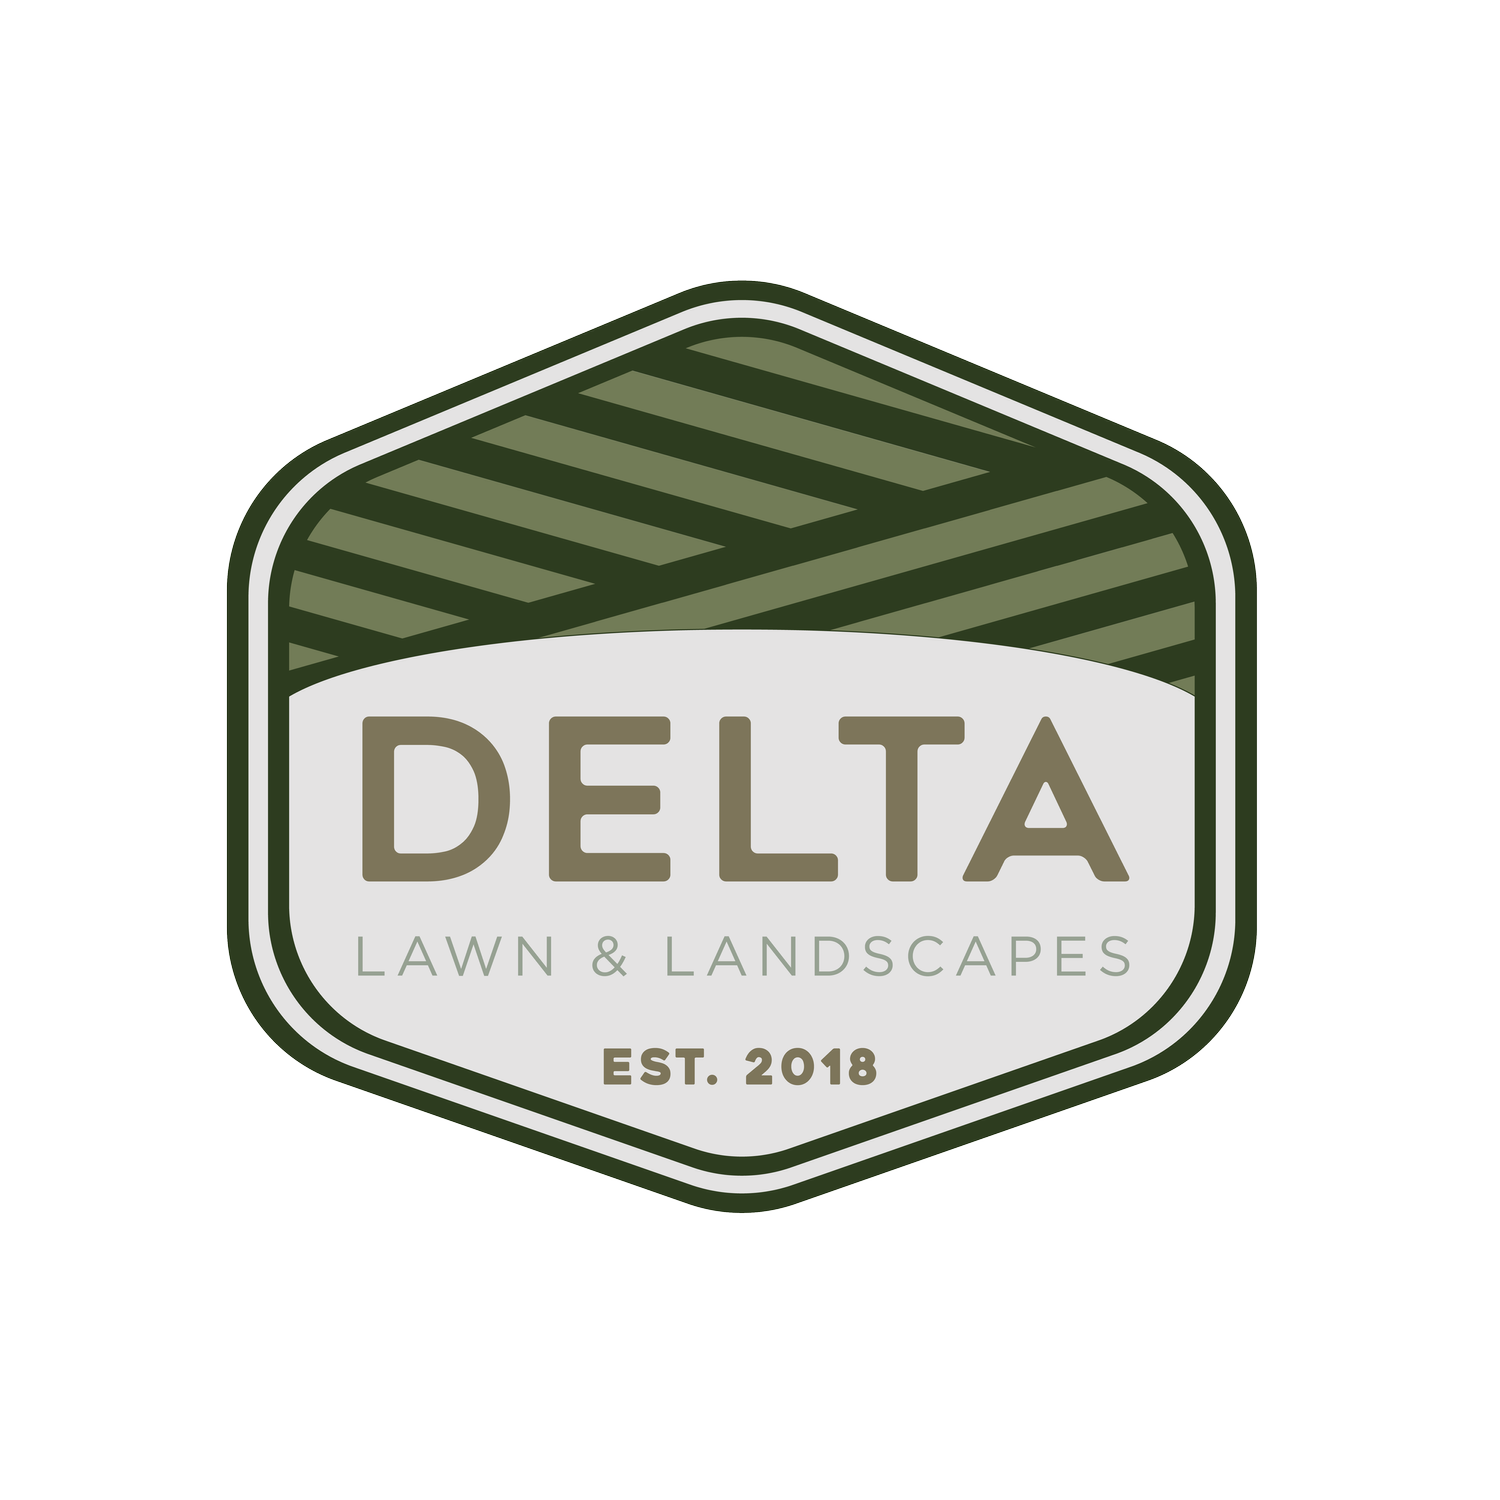 Delta landscapes